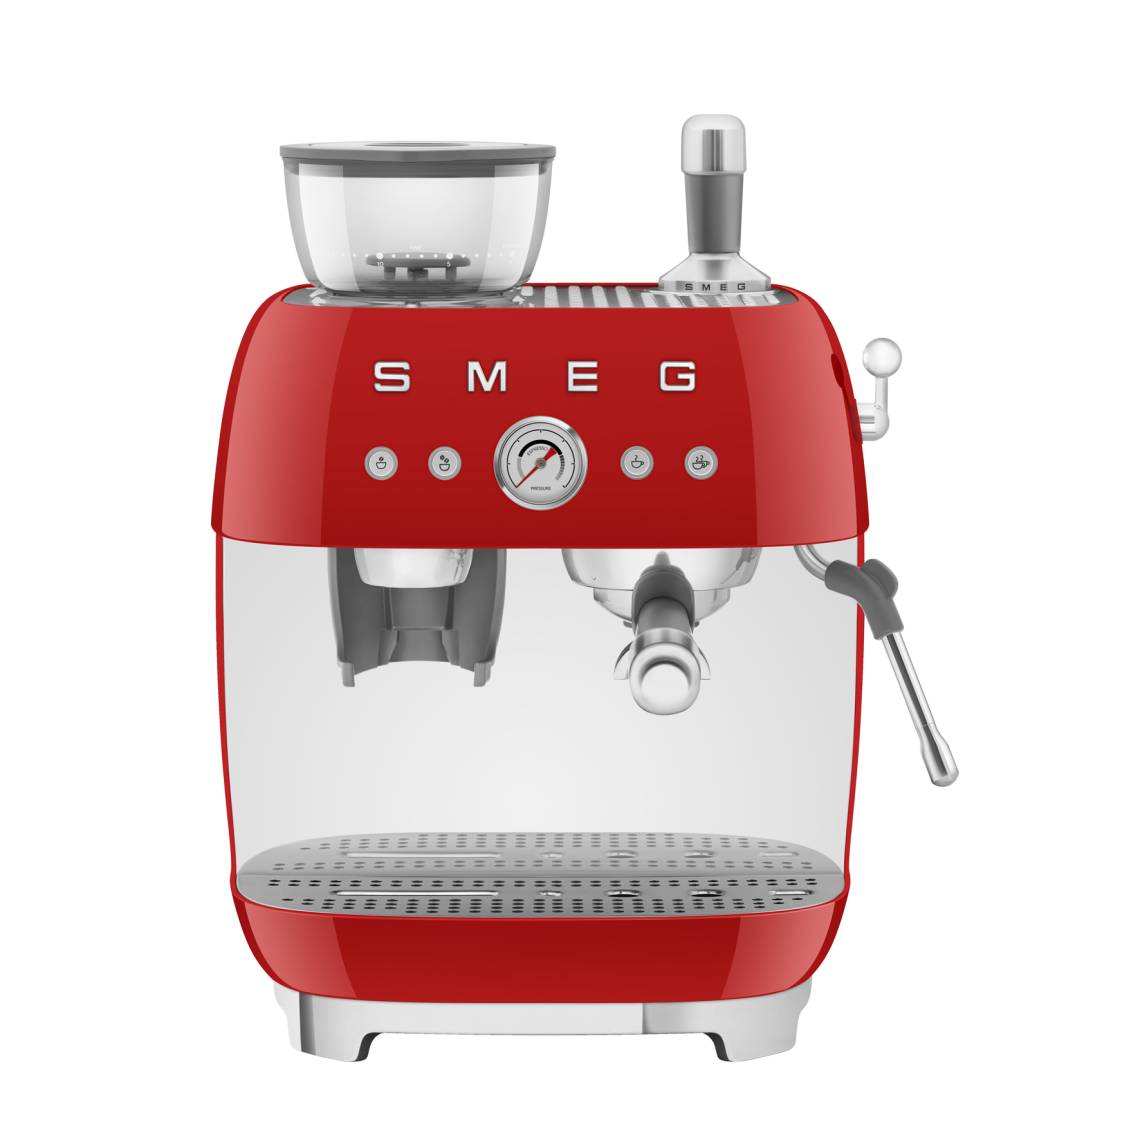 Smeg - Siebträger-Espressomaschine mit integrierter Kaffeemühle EGF03, Rot